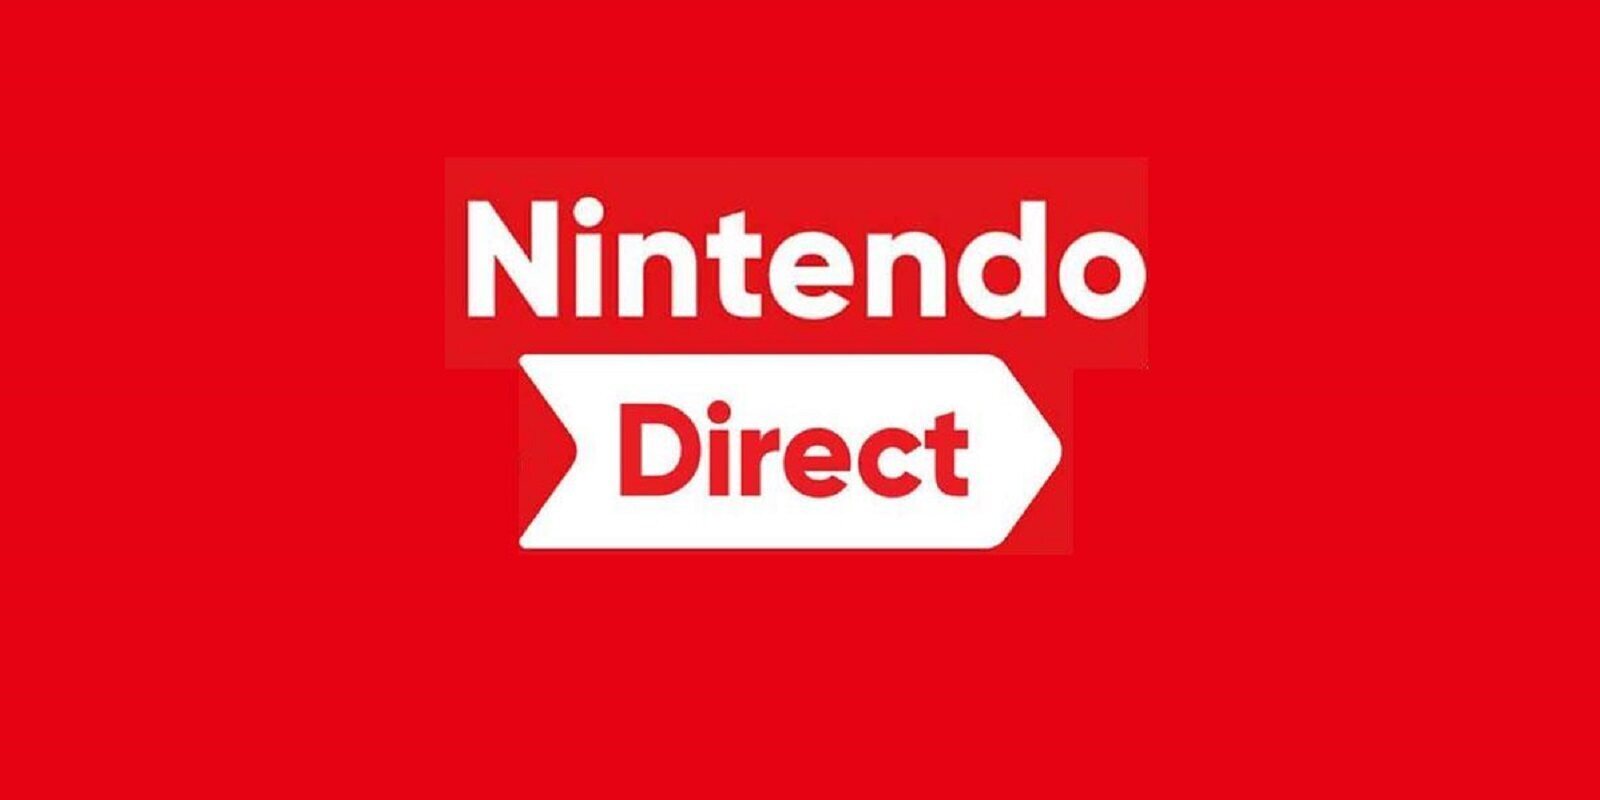 Fecha y hora del próximo Nintendo Direct, con los juegos que llegarán a Switch este invierno